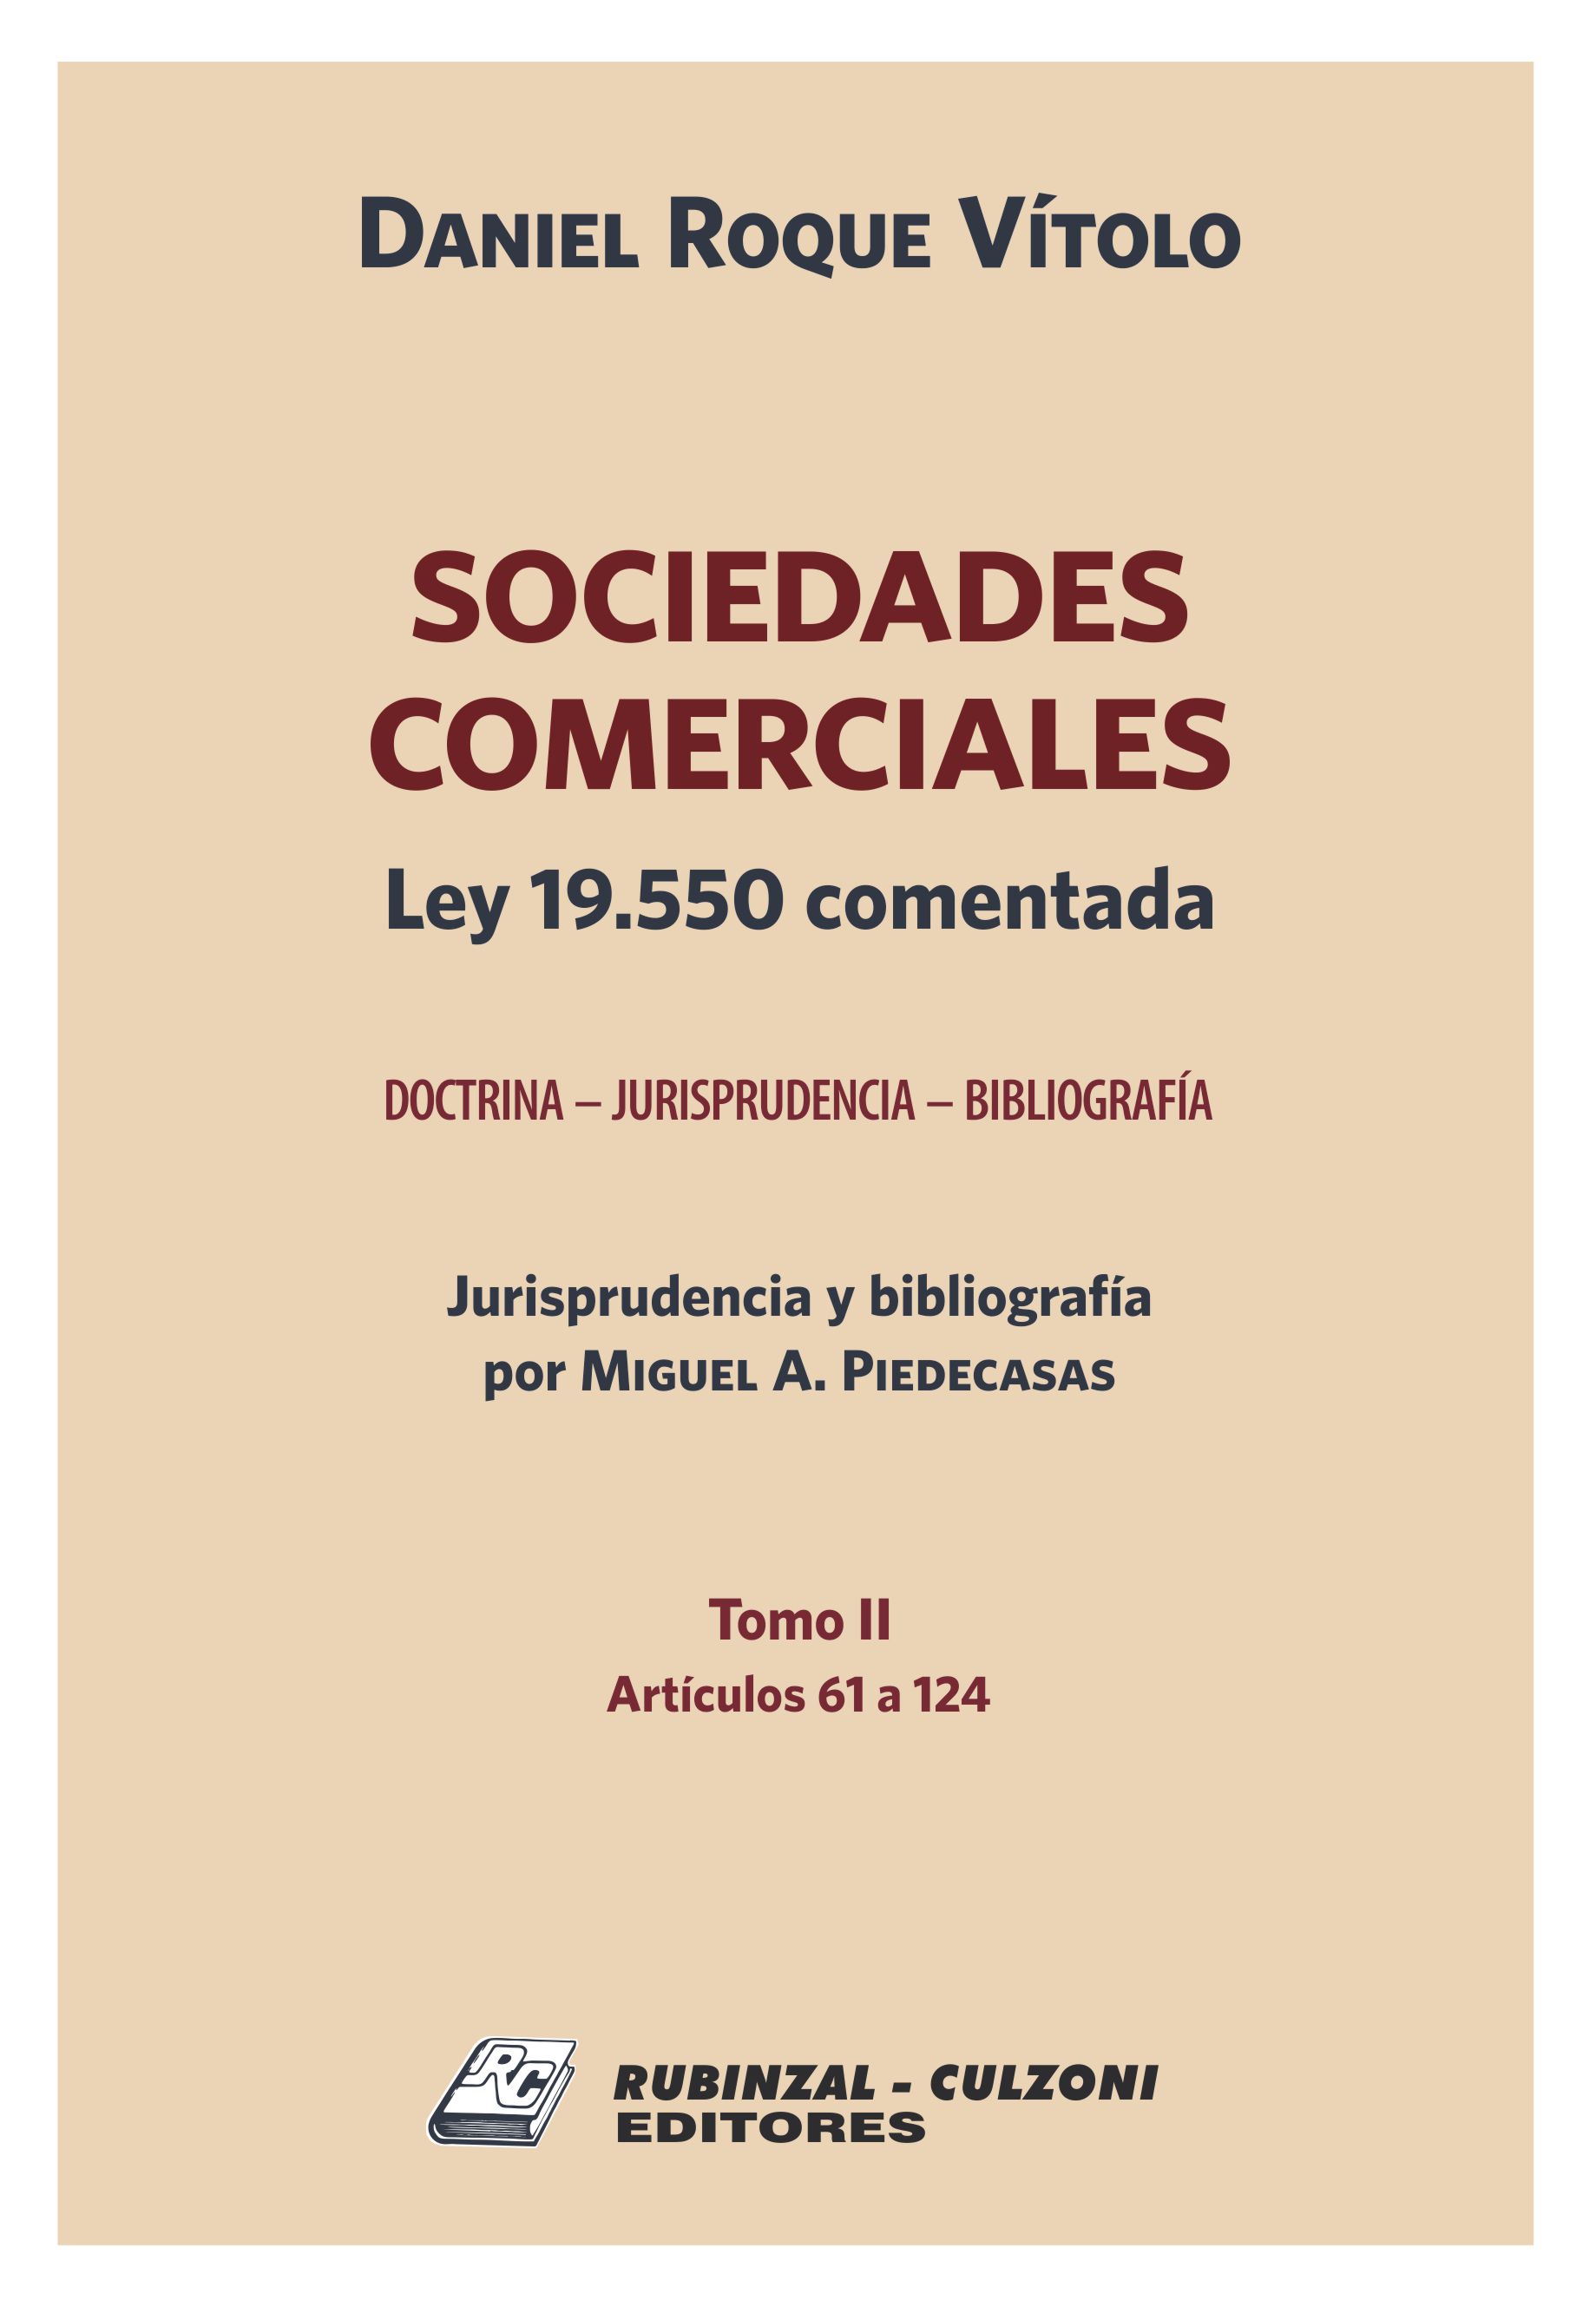 Sociedades Comerciales. Ley 19.550 comentada (Doctrina - Jurisprudencia - Bibliografía). - Tomo II (Artículos 61 a 124).